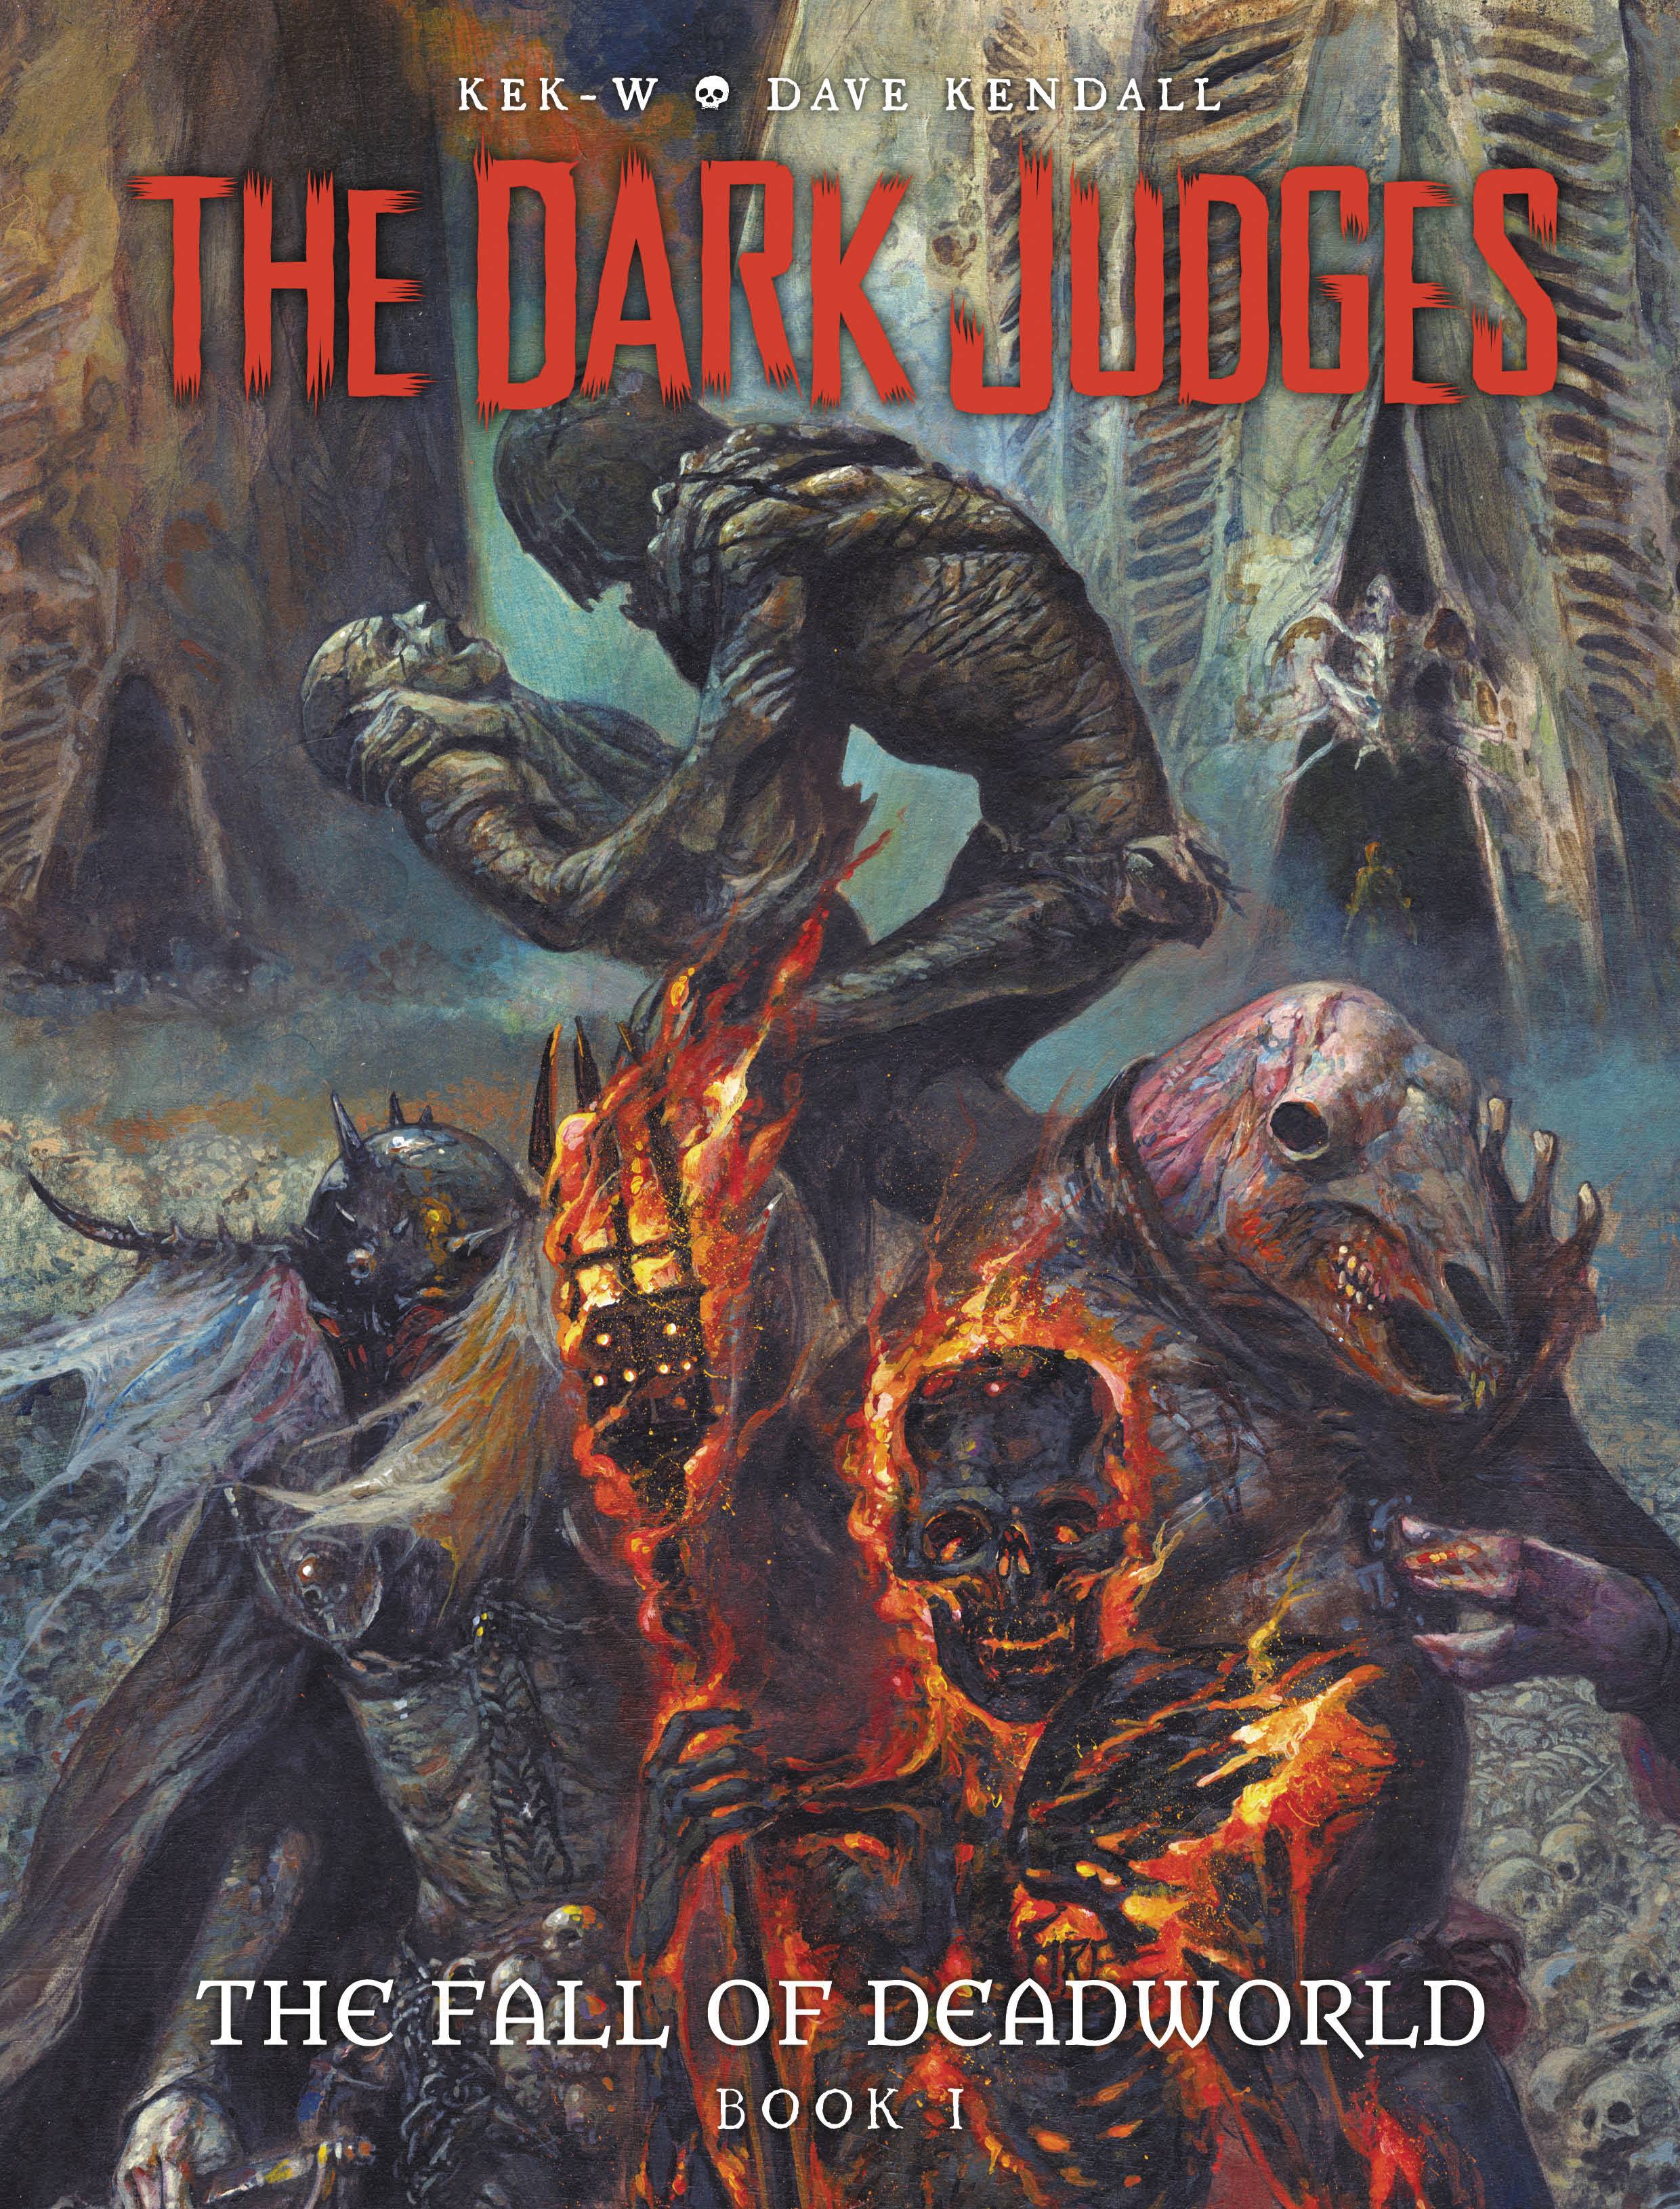 Dark Judges Fall of Deadworld Hardcover Volume 1